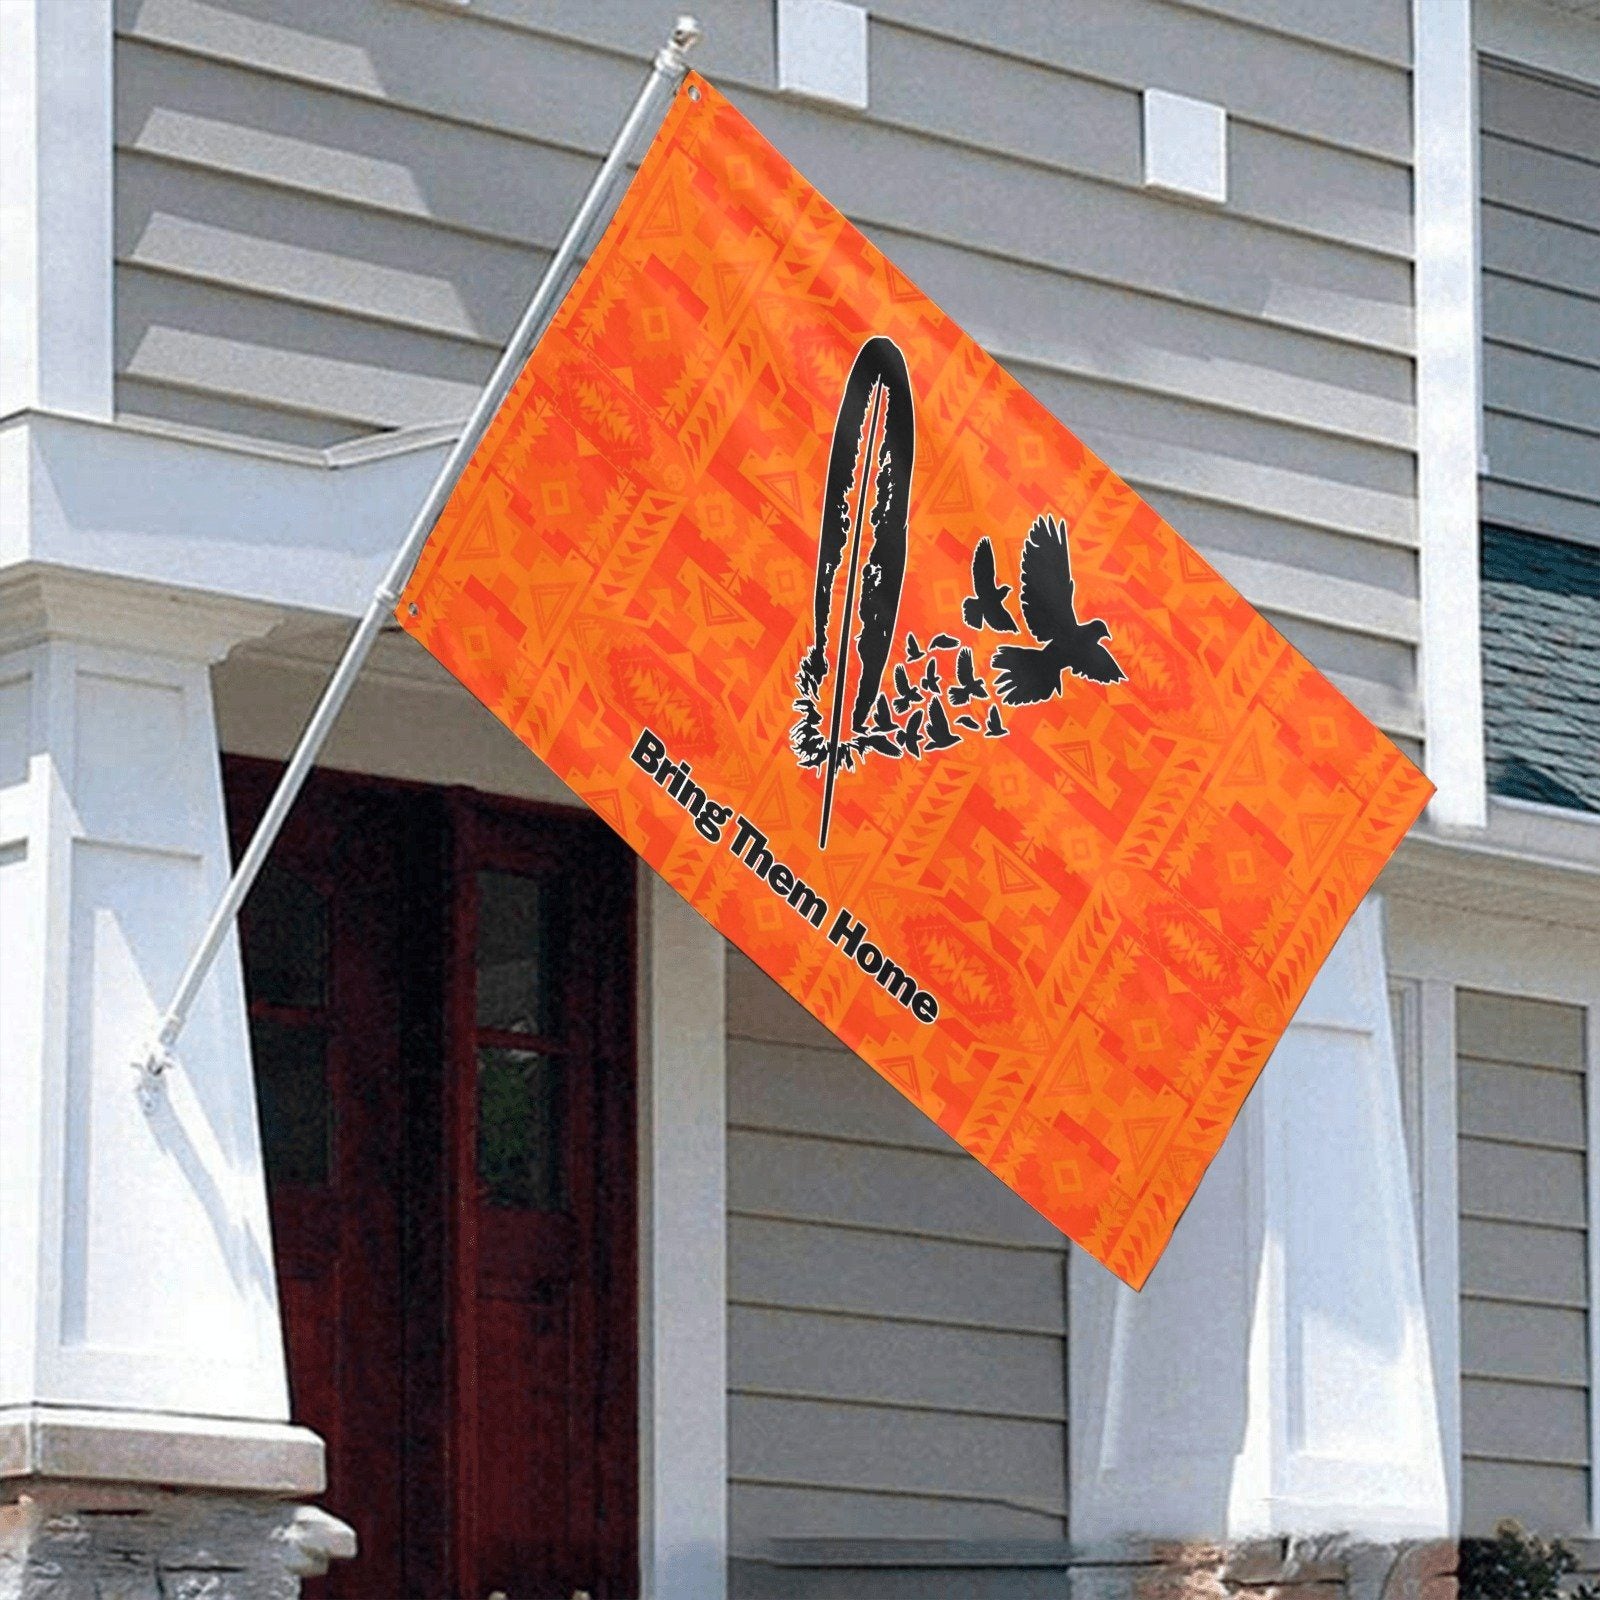 Chiefs Mountain Orange Bring Them Home Garden Flag 70"x47" Garden Flag 70"x47" e-joyer 